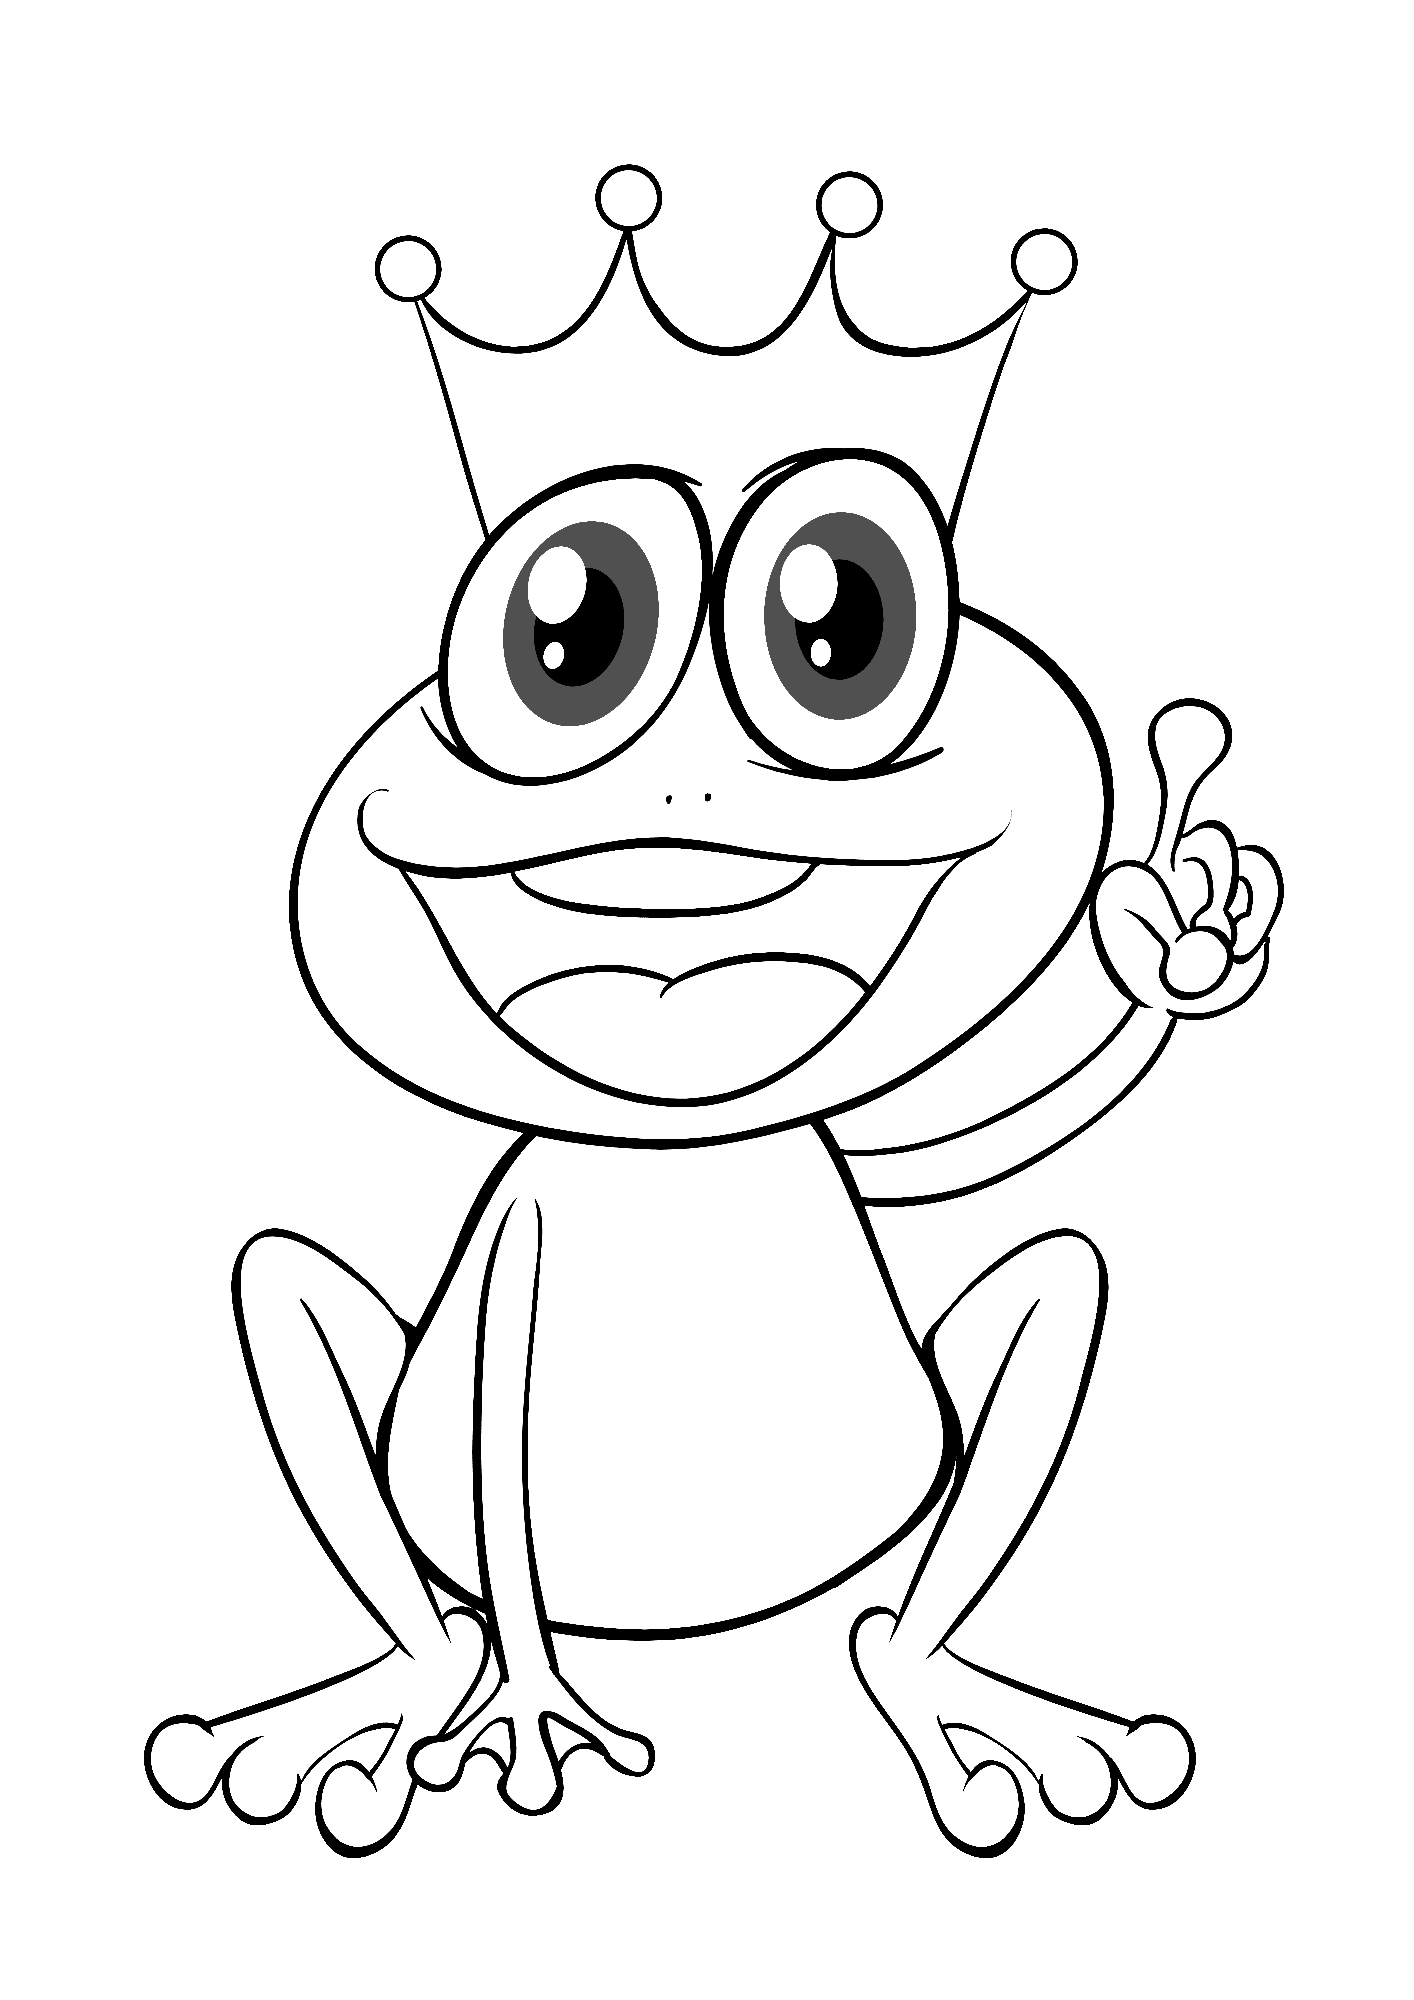 Princess Frog Coloring Page